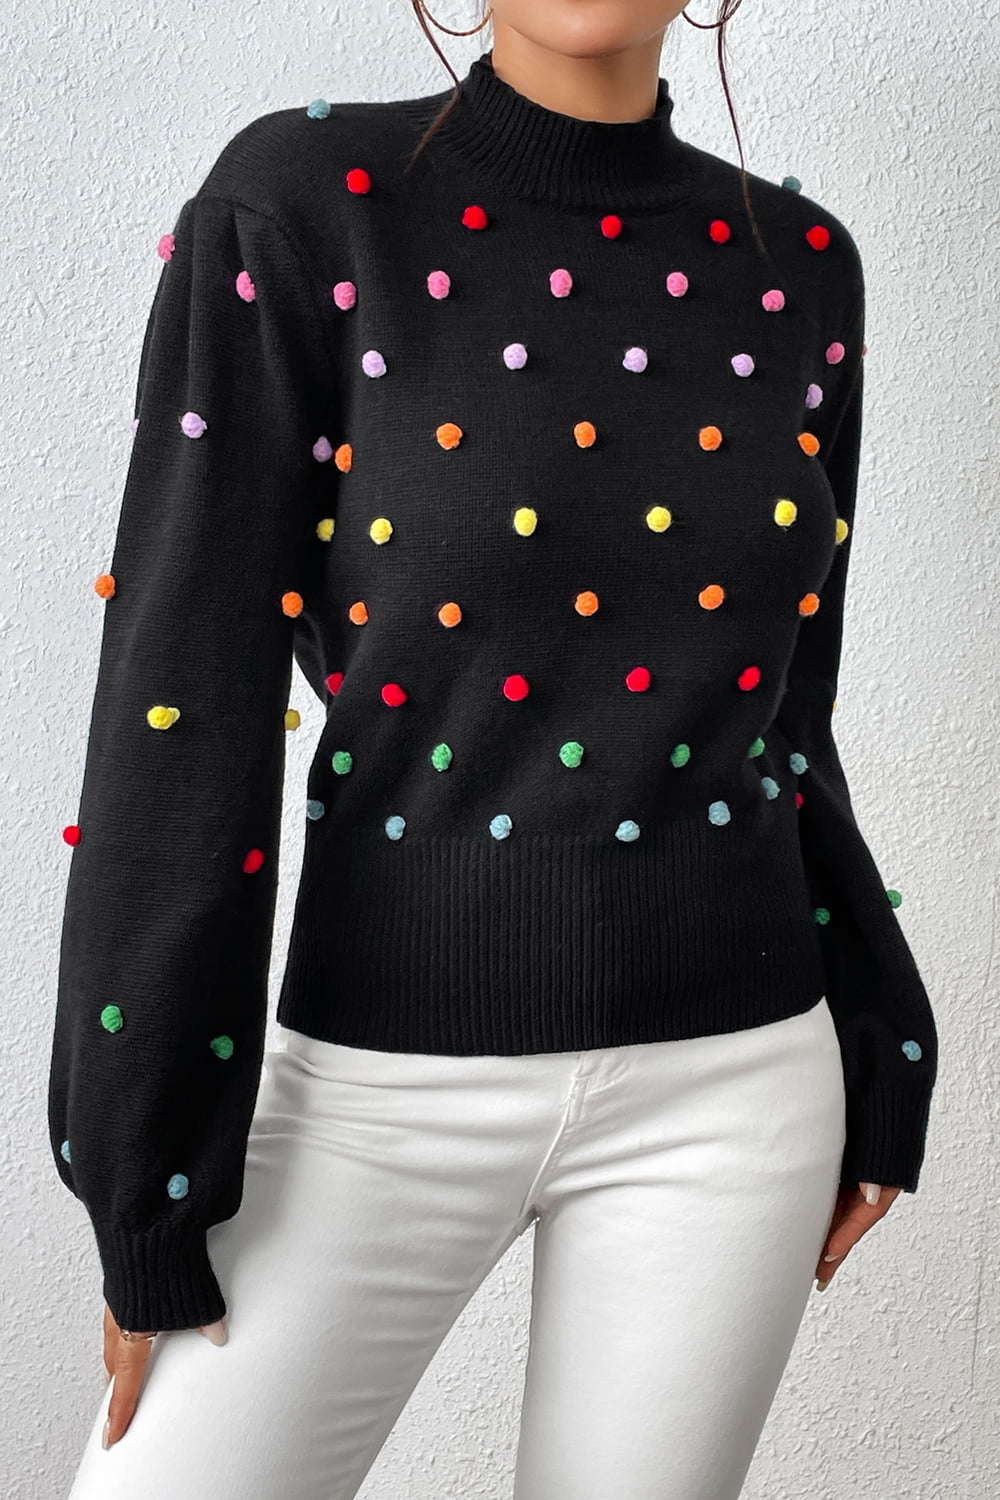 Sweater- Women's Rainbow Pom Pom Sweater - Fashionable Knitwear Pullover- - Pekosa Women Clothing